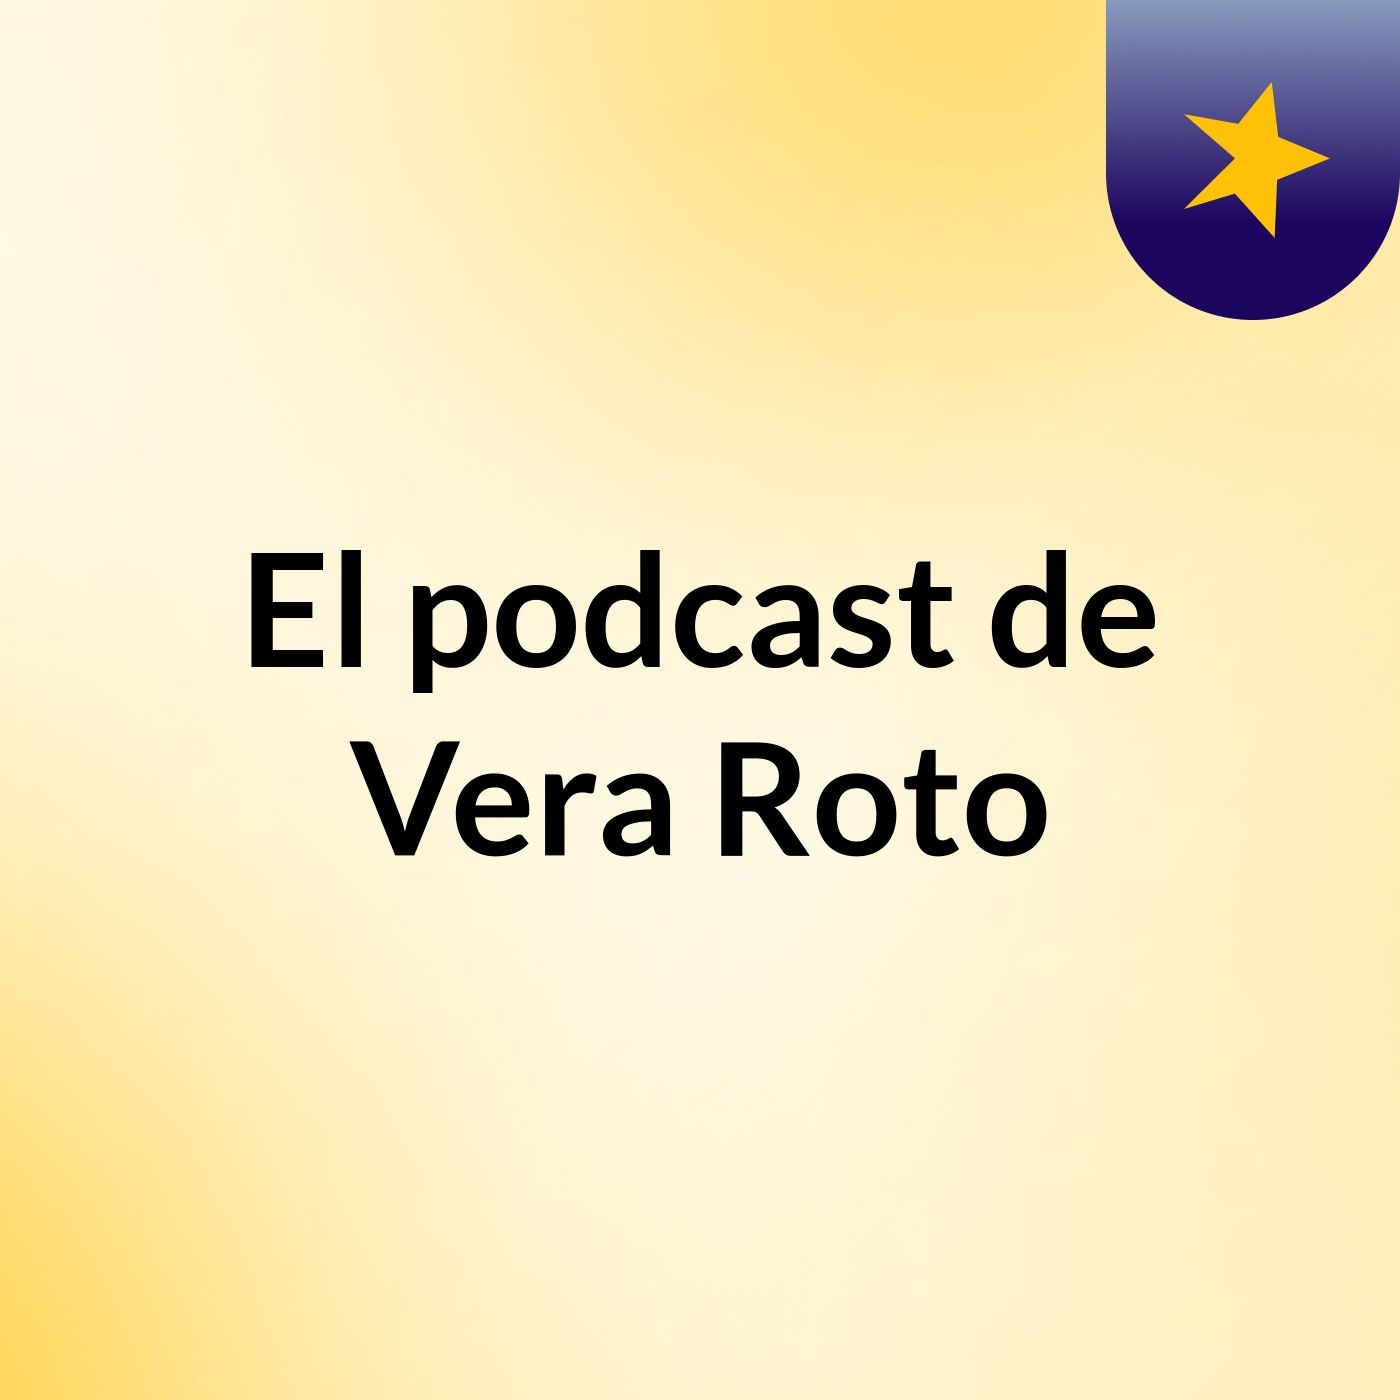 El podcast de Vera Roto